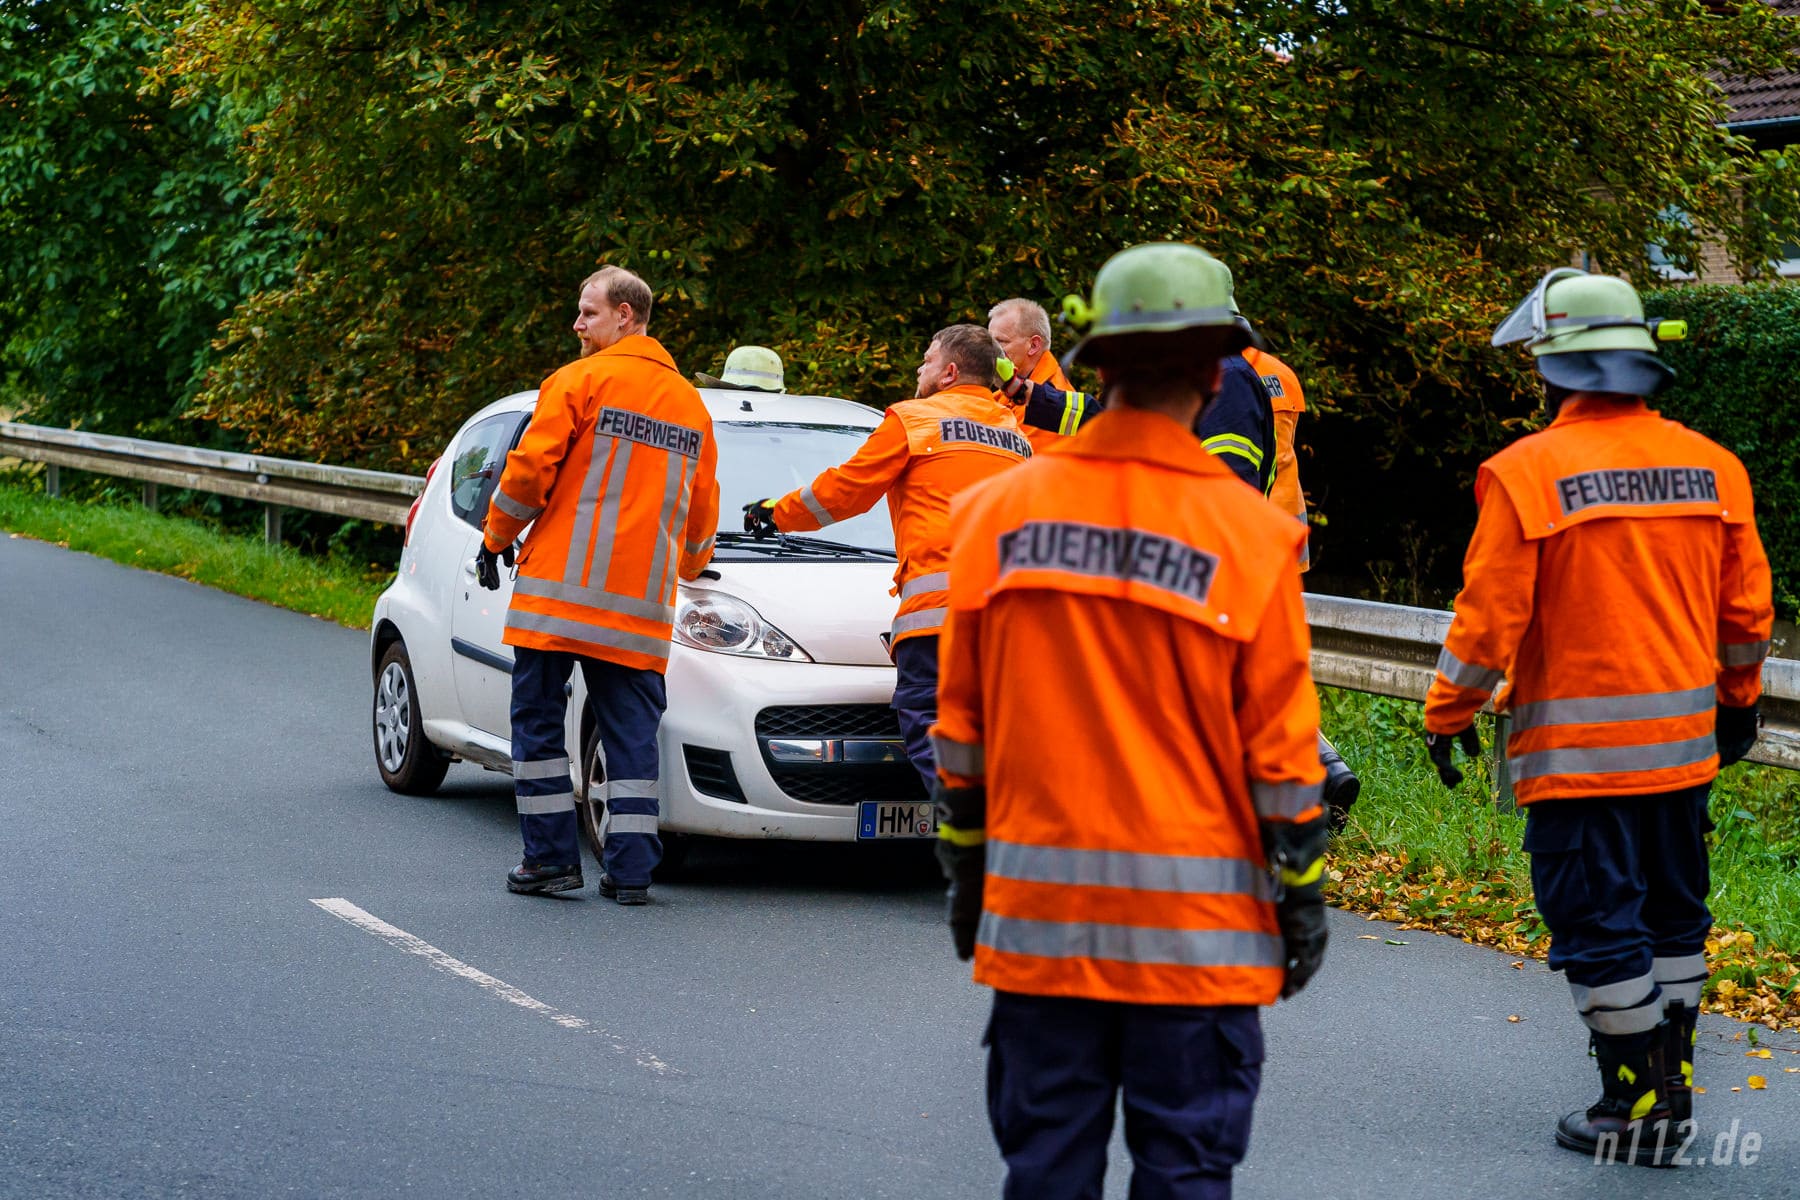 Ehrenamtliche Helfer schieben das Auto von der Straße, nachdem sie die Batterie abgeklemmt haben. (Foto: n112.de/Stefan Hillen)